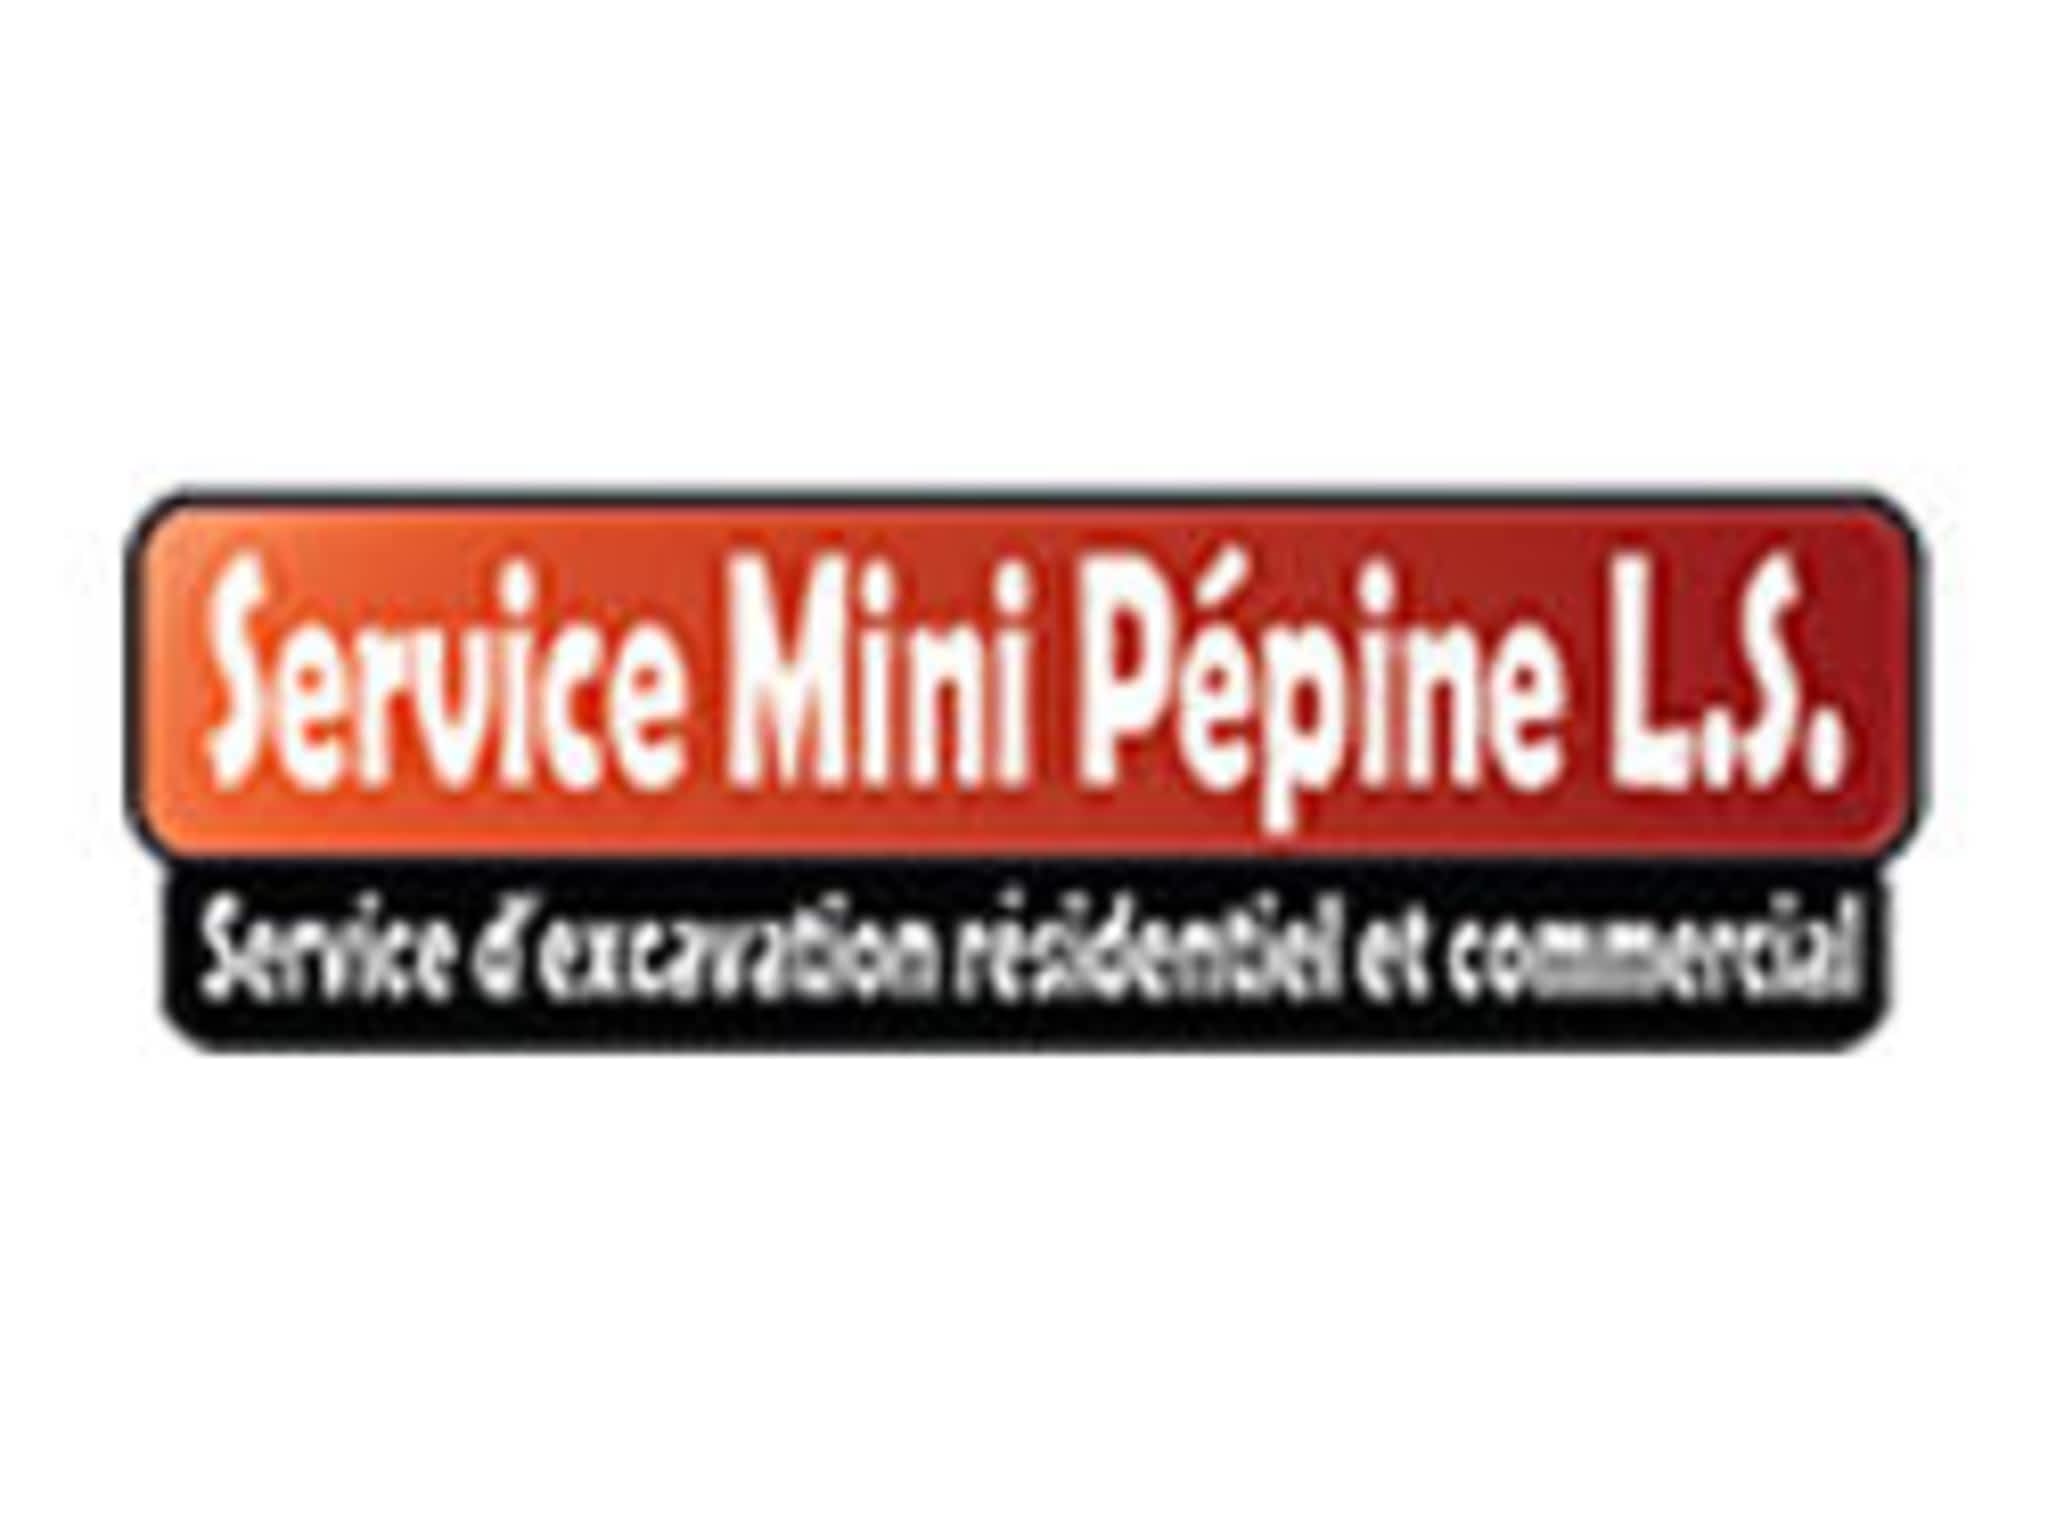 photo Service Mini Pépine L.S. - Excavation et transport Terrebonne